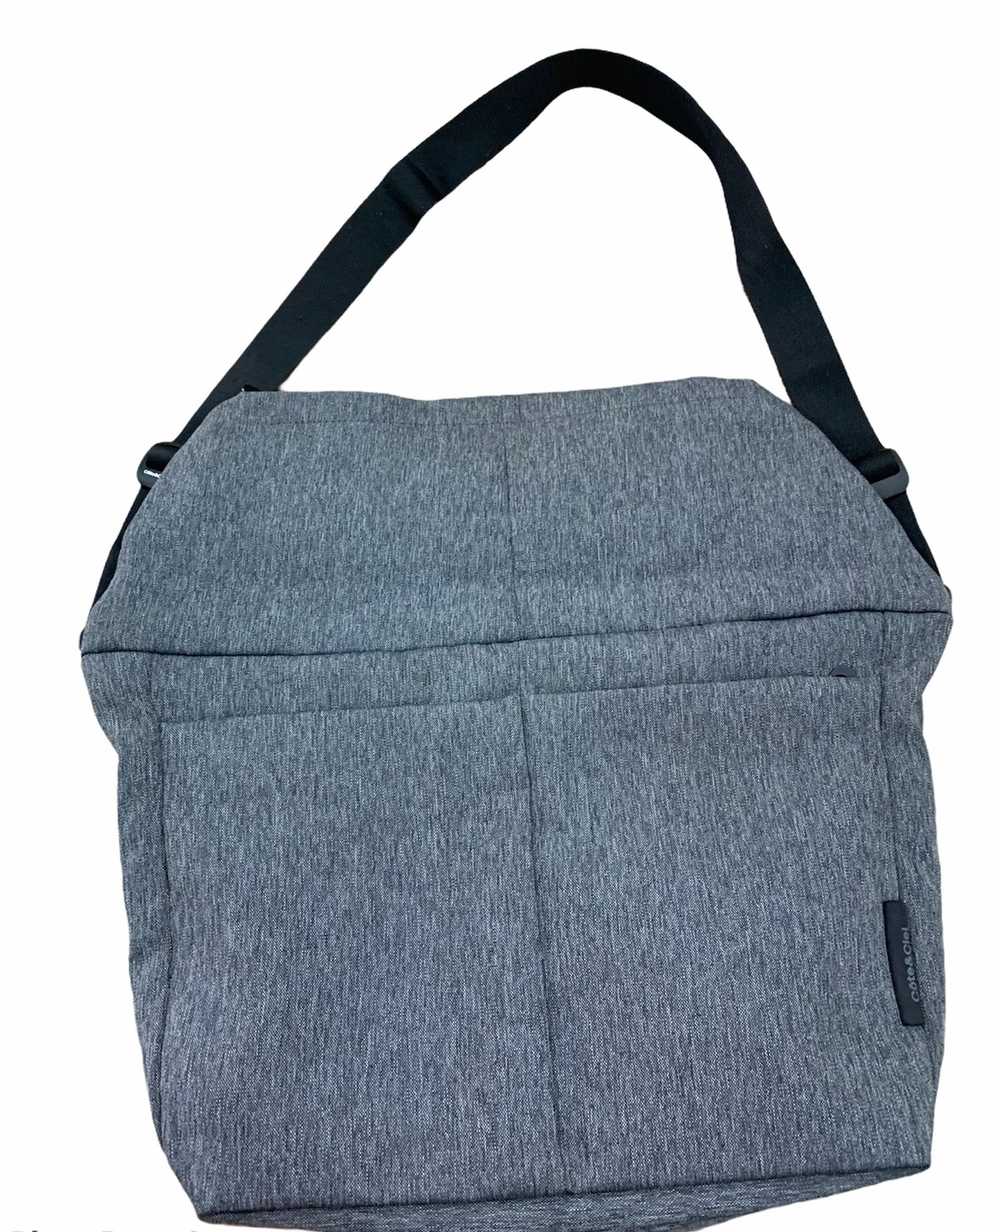 Cote&Ciel - Authentic Cote&CieL massenger bag - image 3